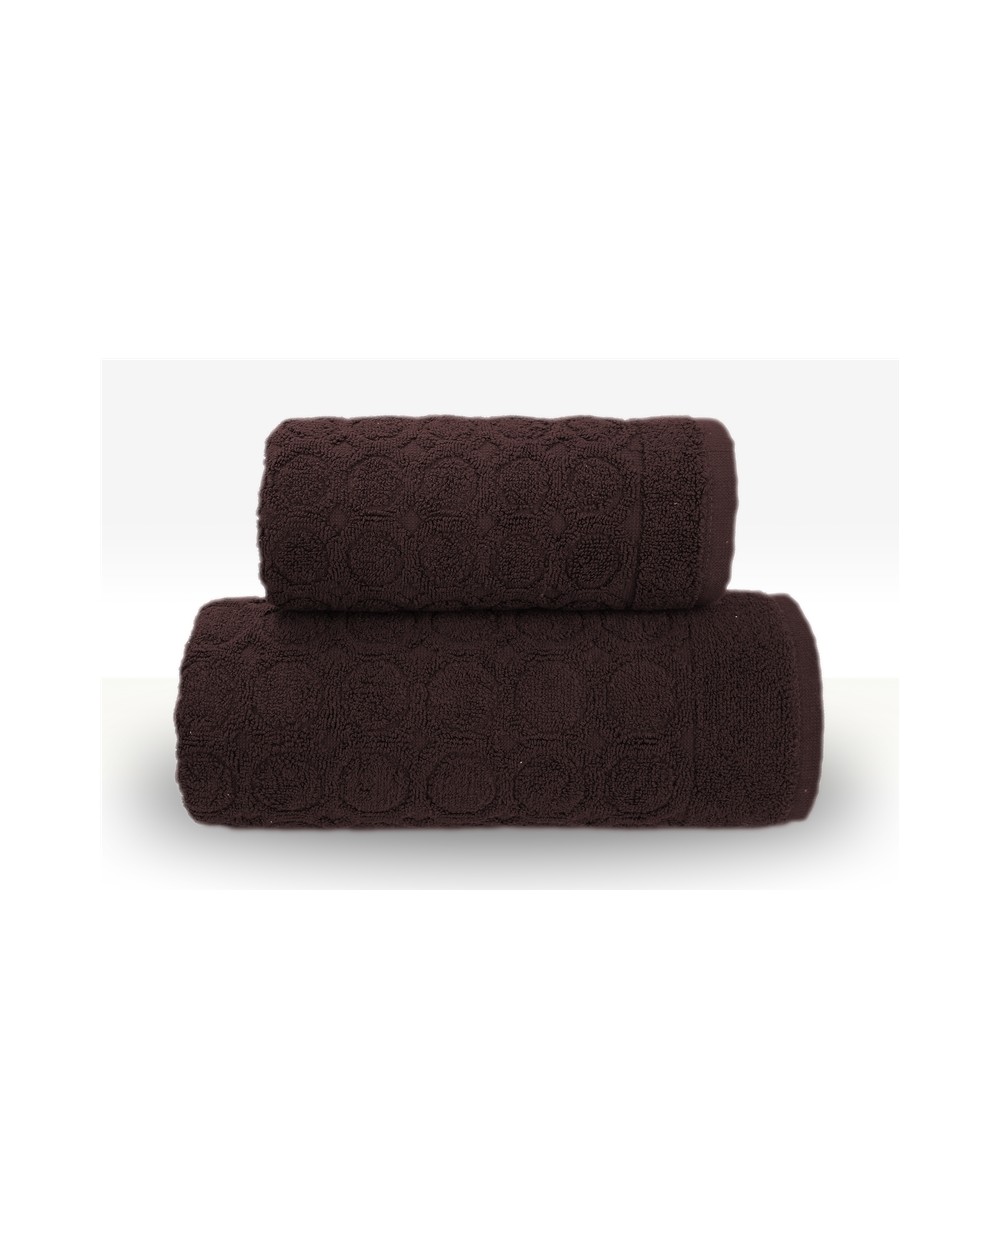 Ręcznik Pepe bawełna 40x60 brązowy